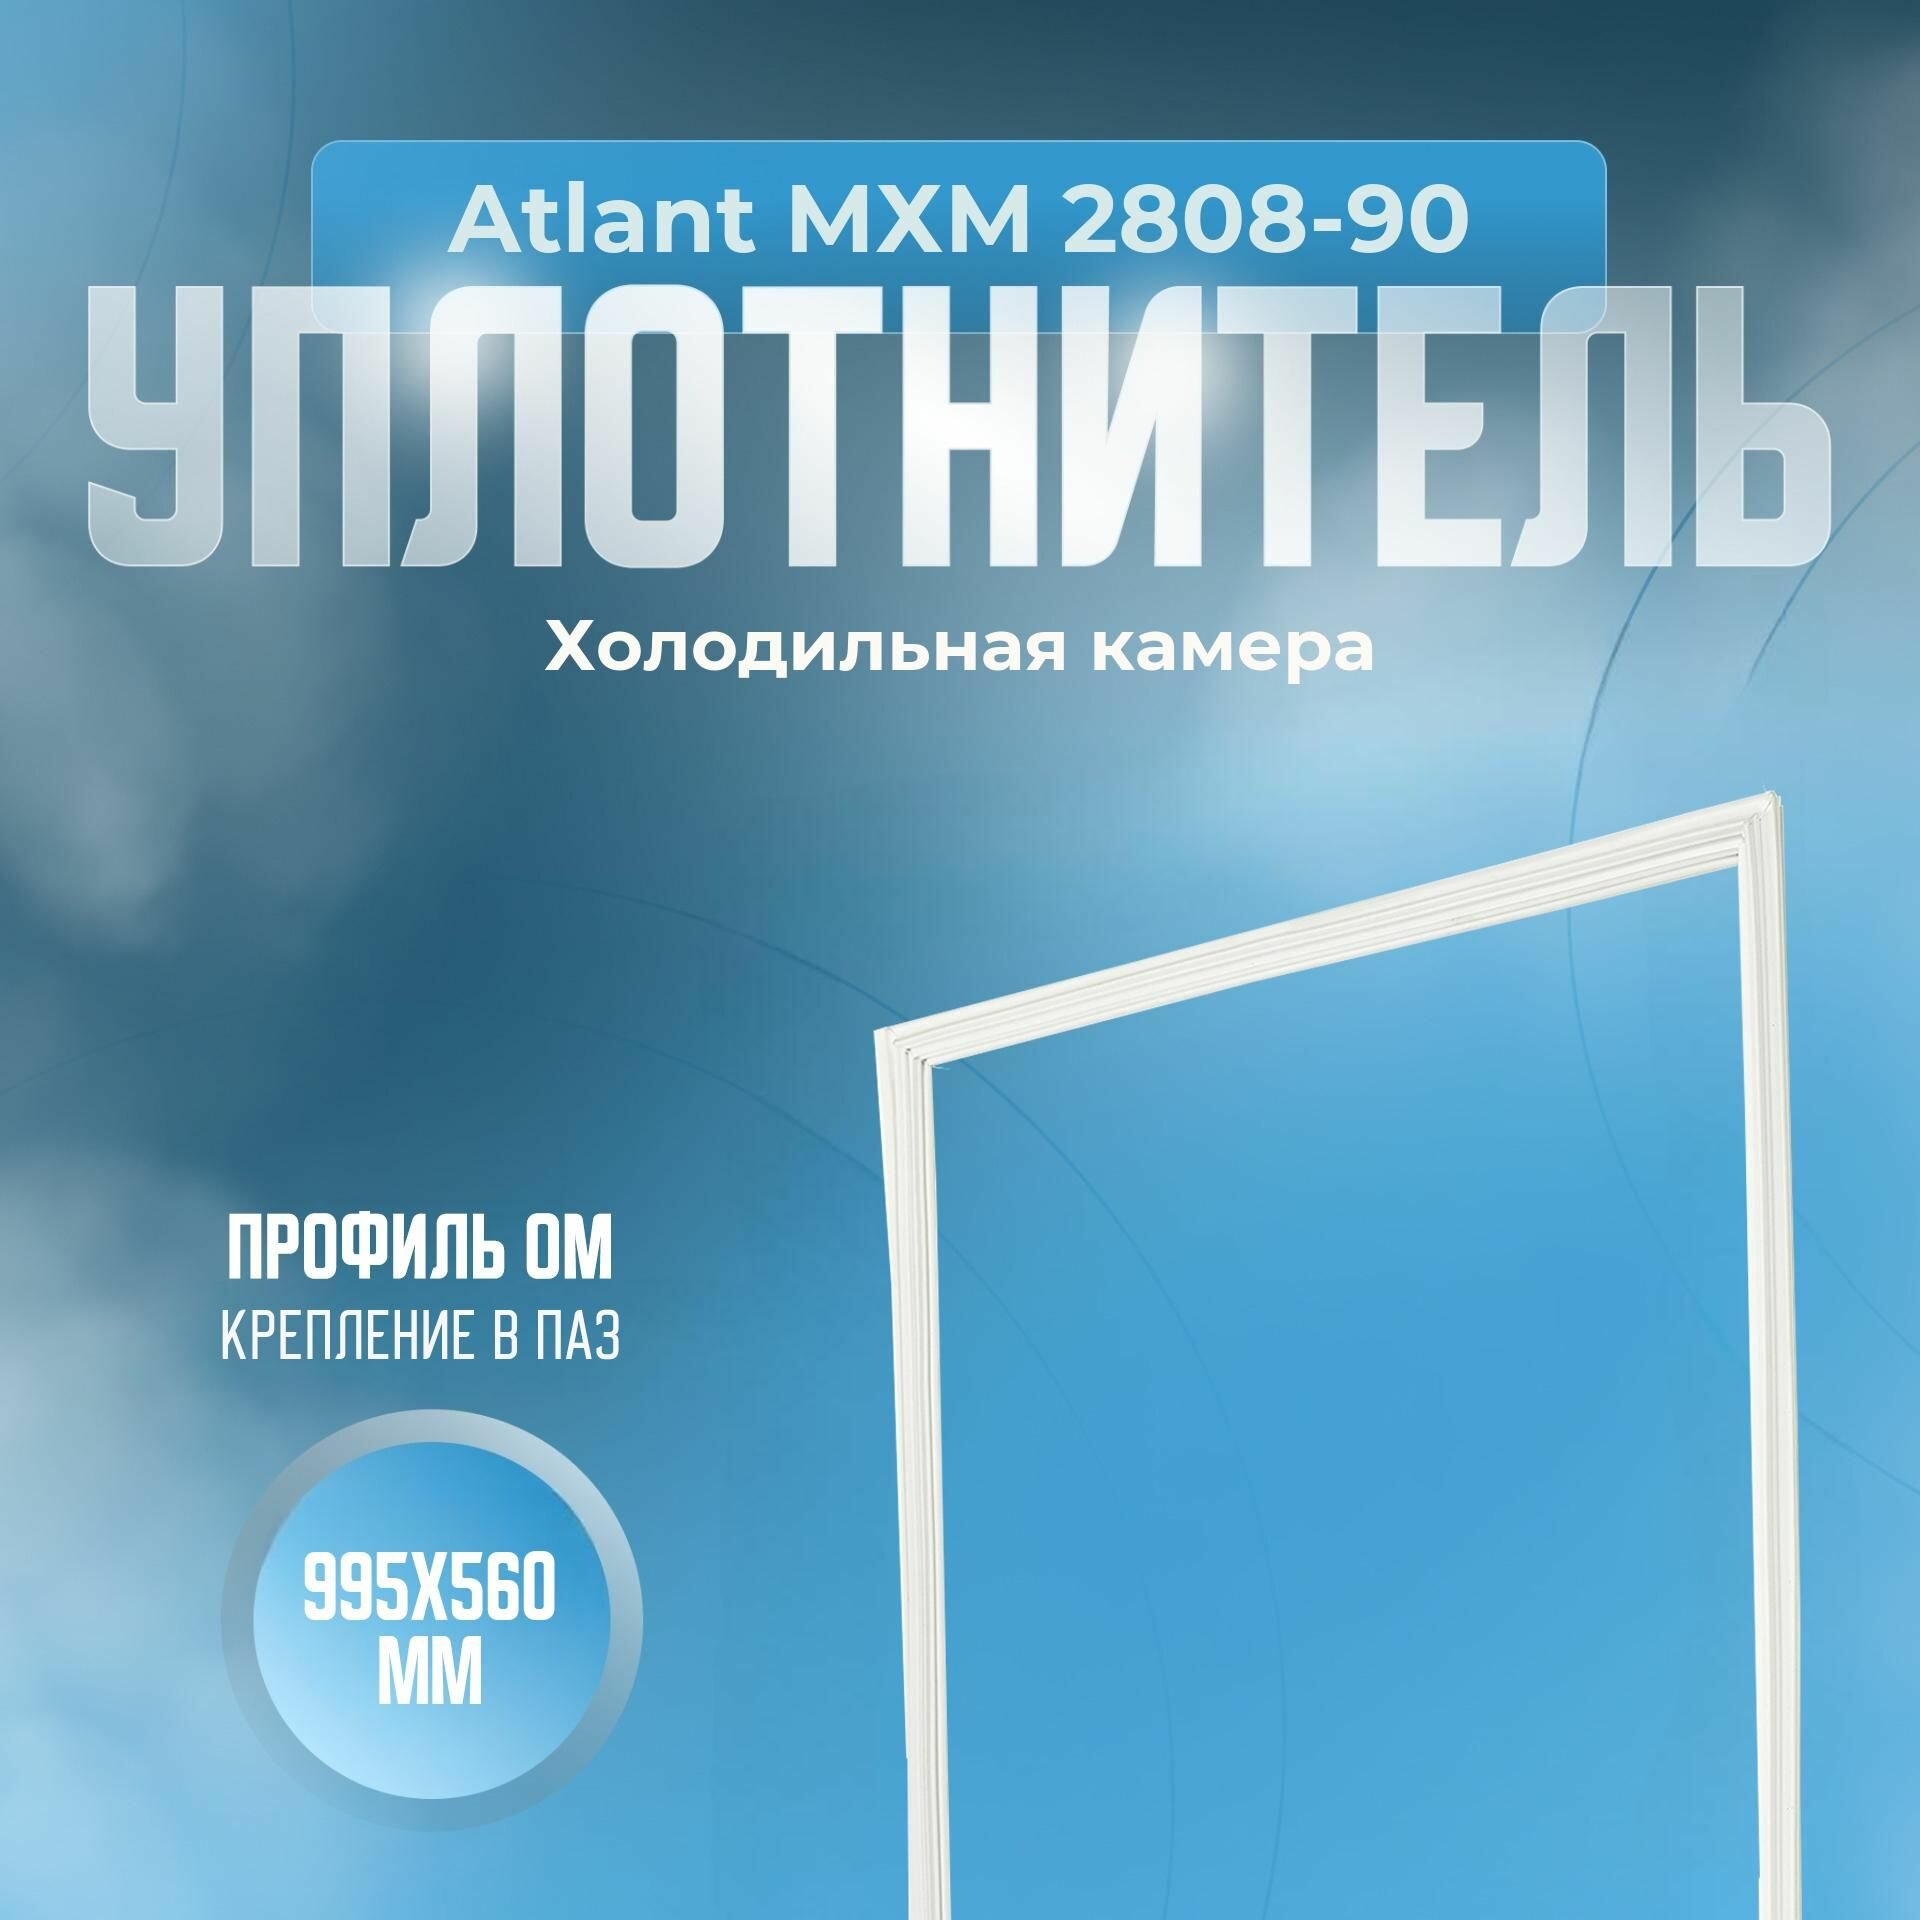 Уплотнитель Atlant МХМ 2808-90. (Холодильная камера) Размер - 995х560 мм. ОМ